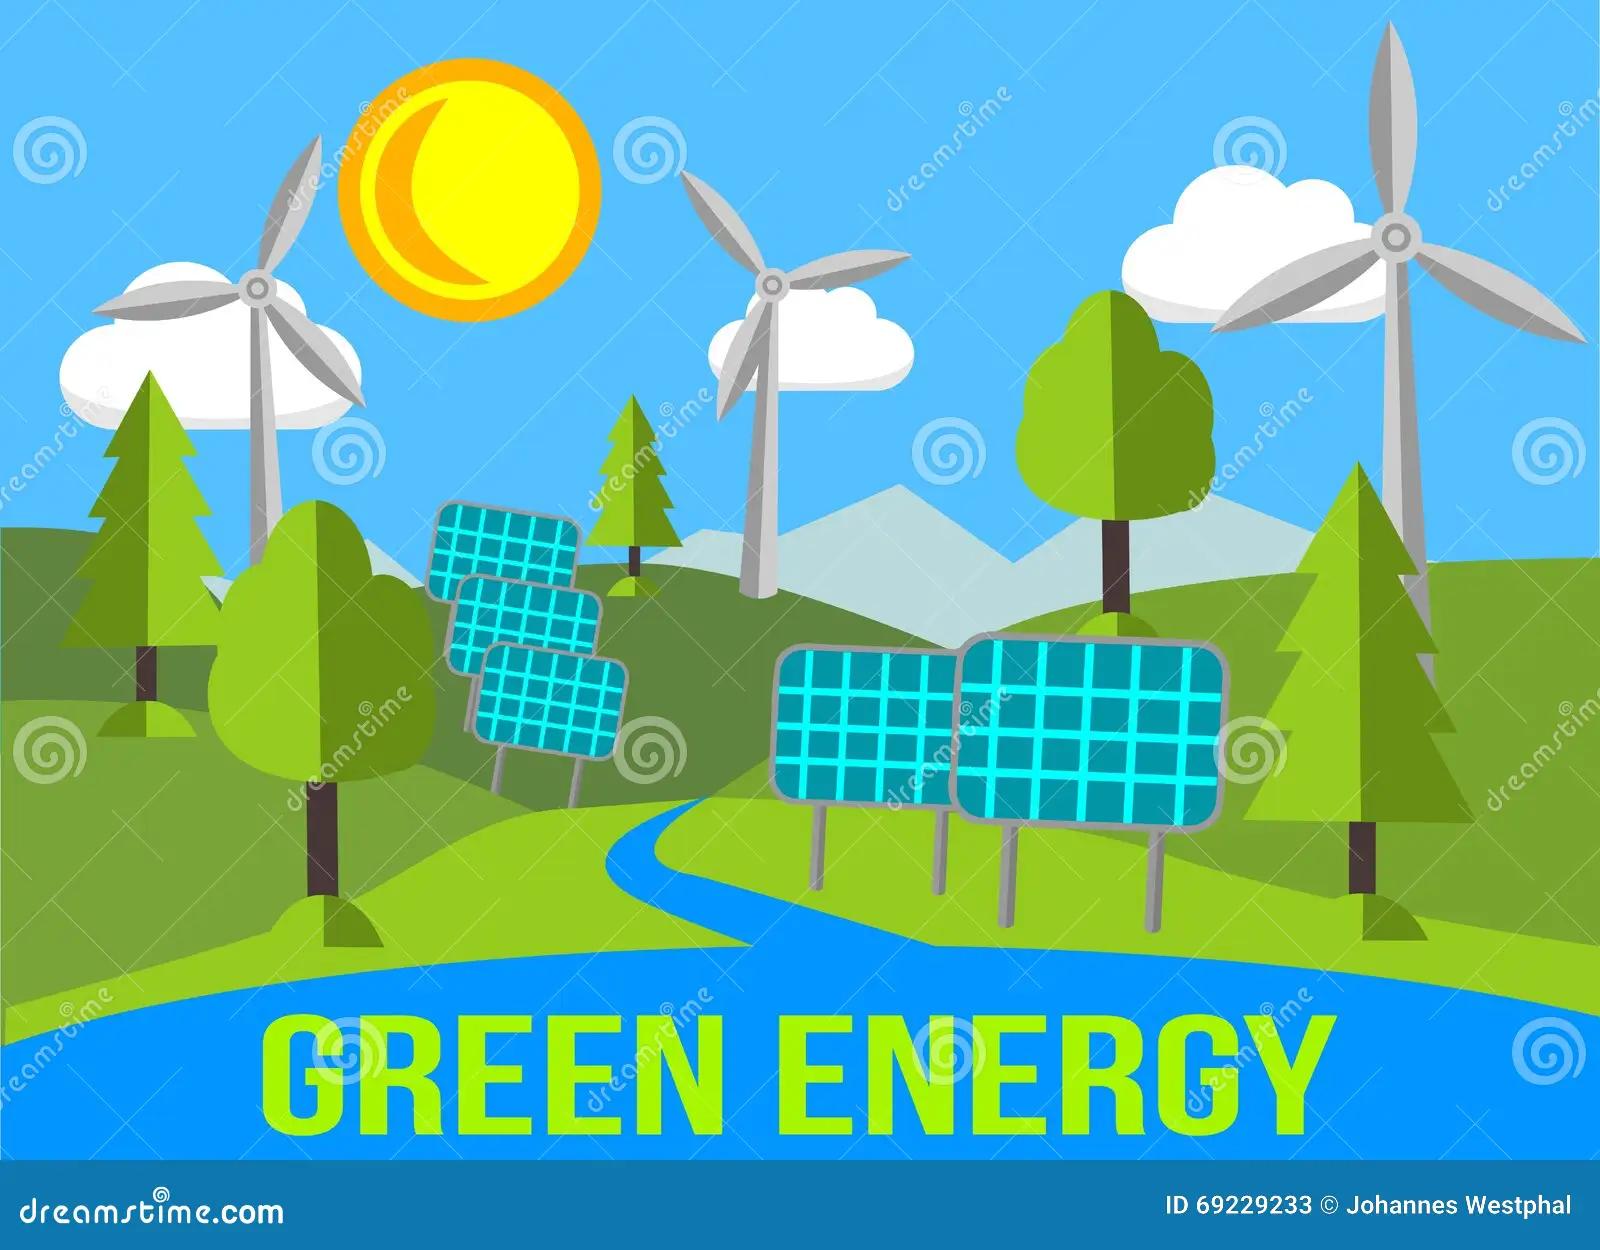 energías renovables y paisaje - Qué problema medioambiental tienen las fuentes de energía